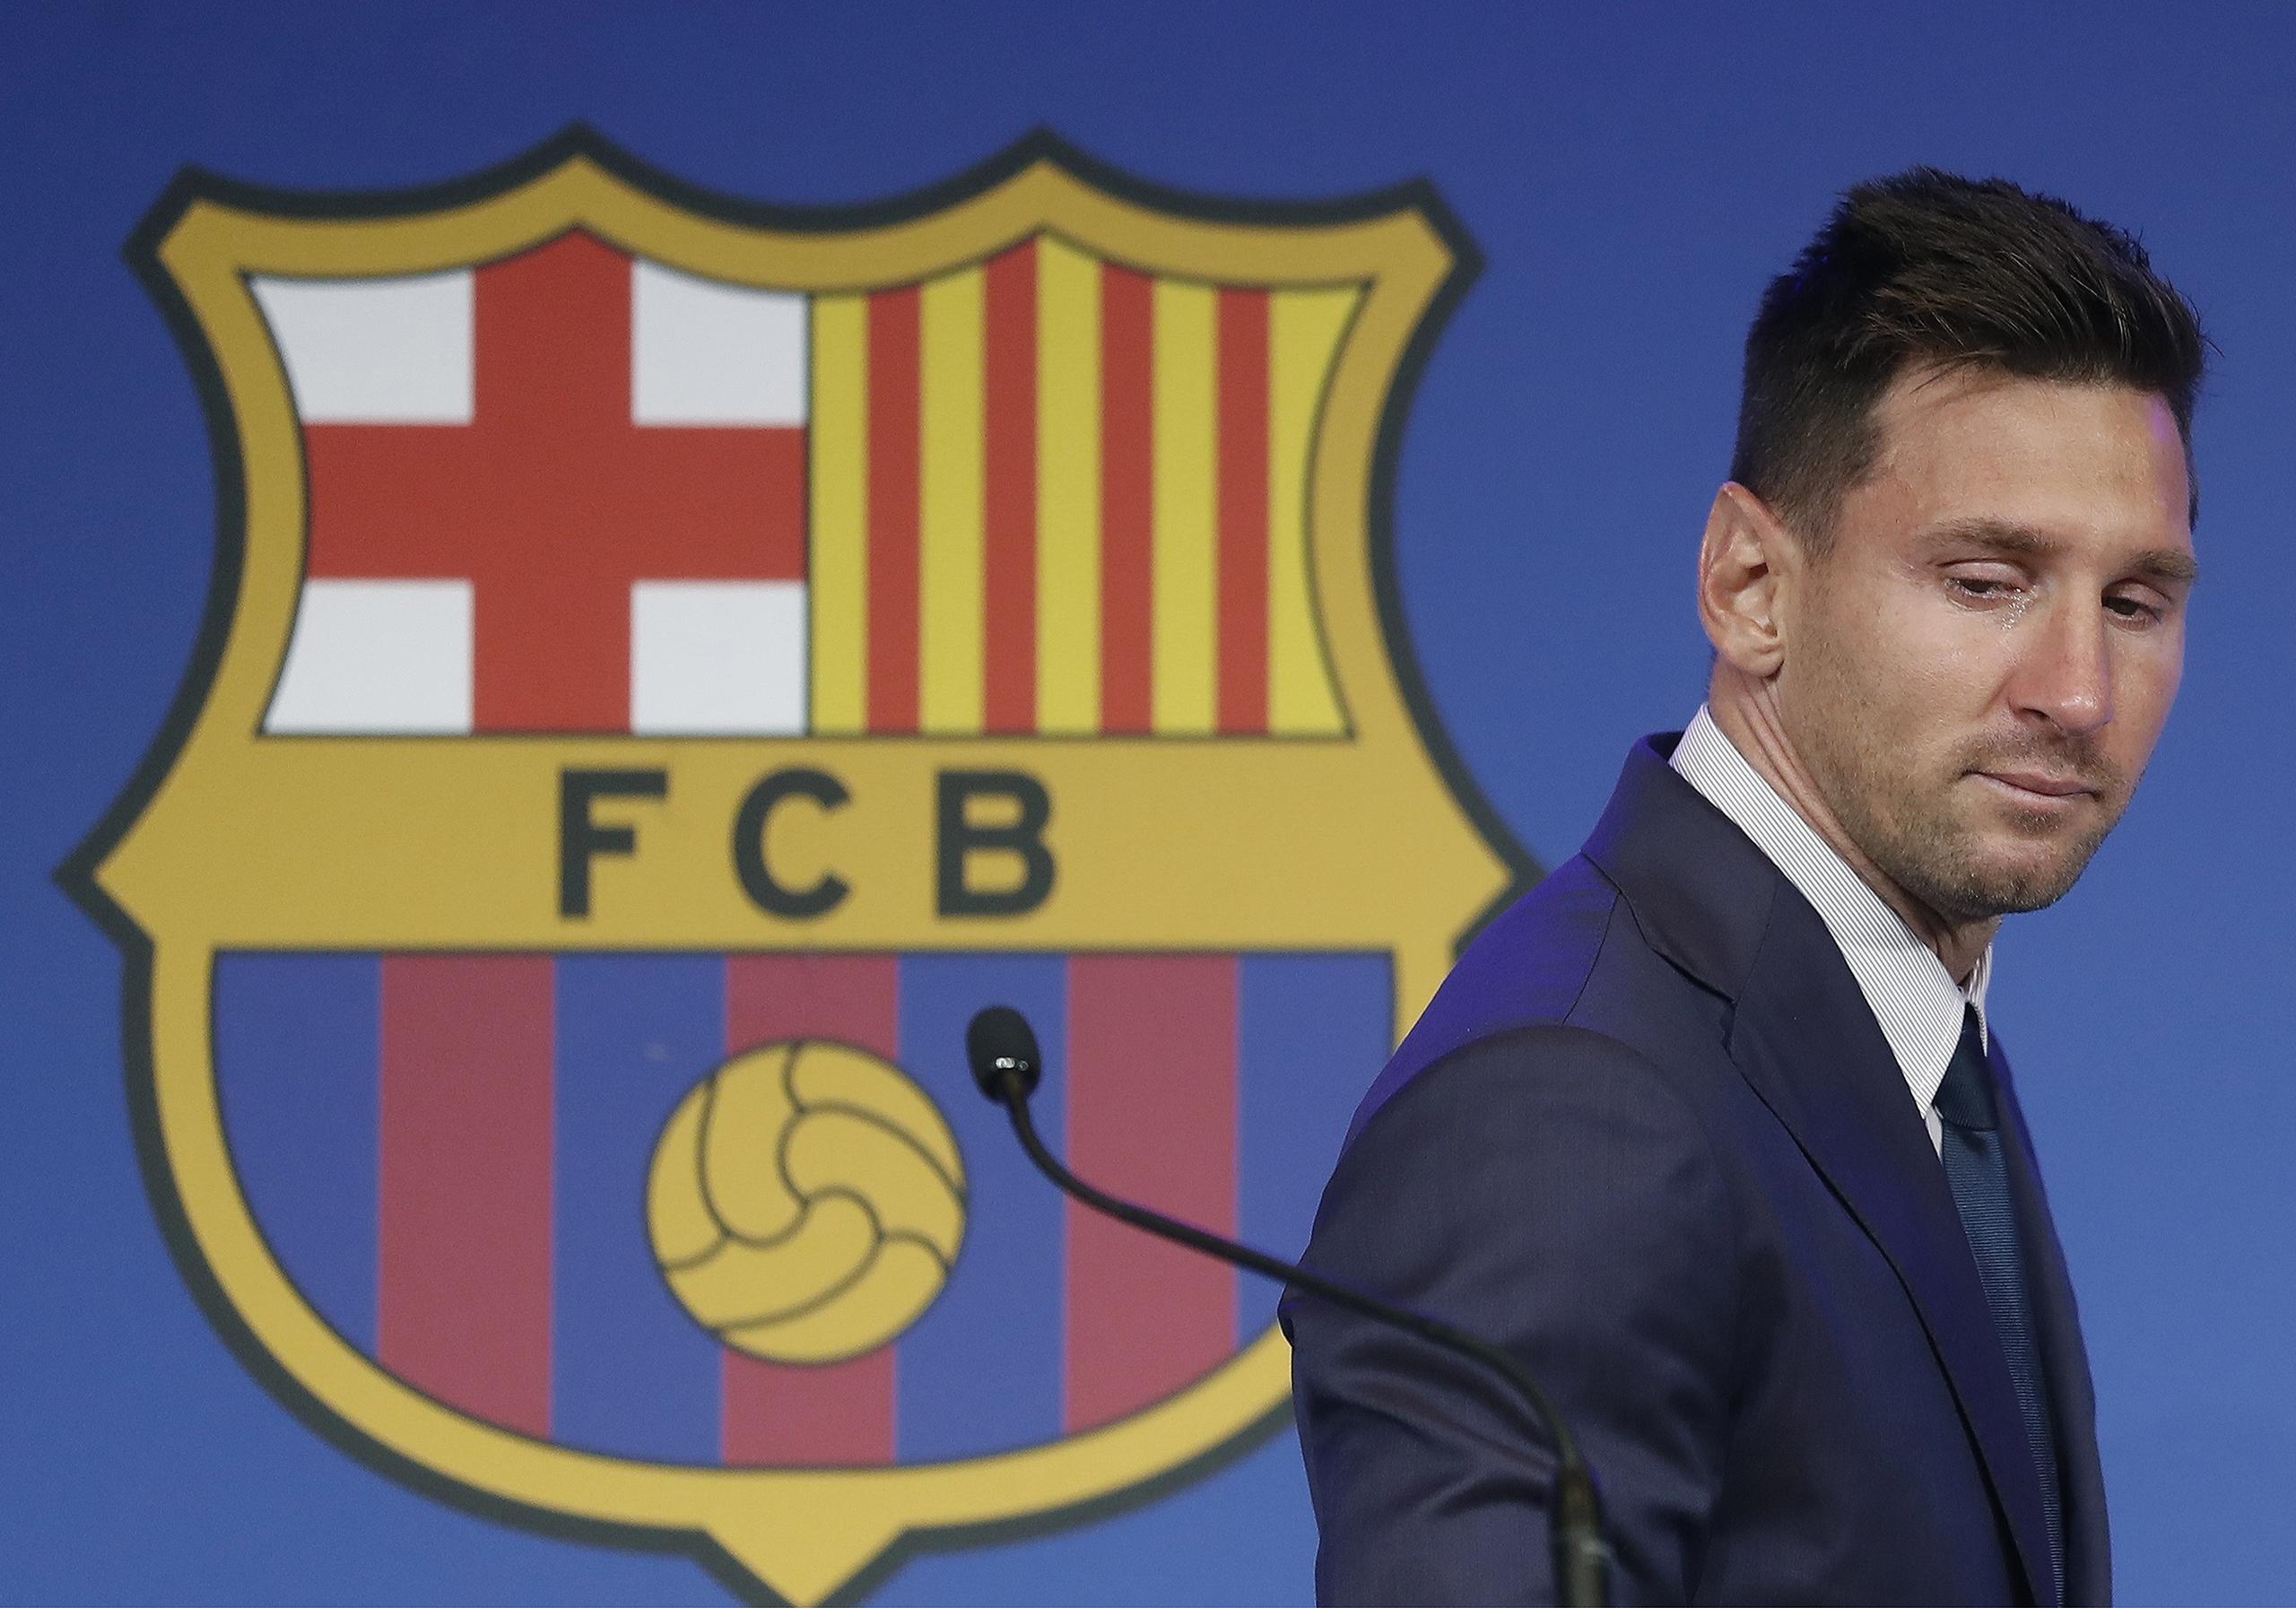 La principal consecuencia de la debacle económica del Barcelona ha sido la salida del equipo de Lionel Messi, esto cuando la La Liga española no permitió su fichaje por las limitaciones que le puso a la nómina de gigante del fútbol español.